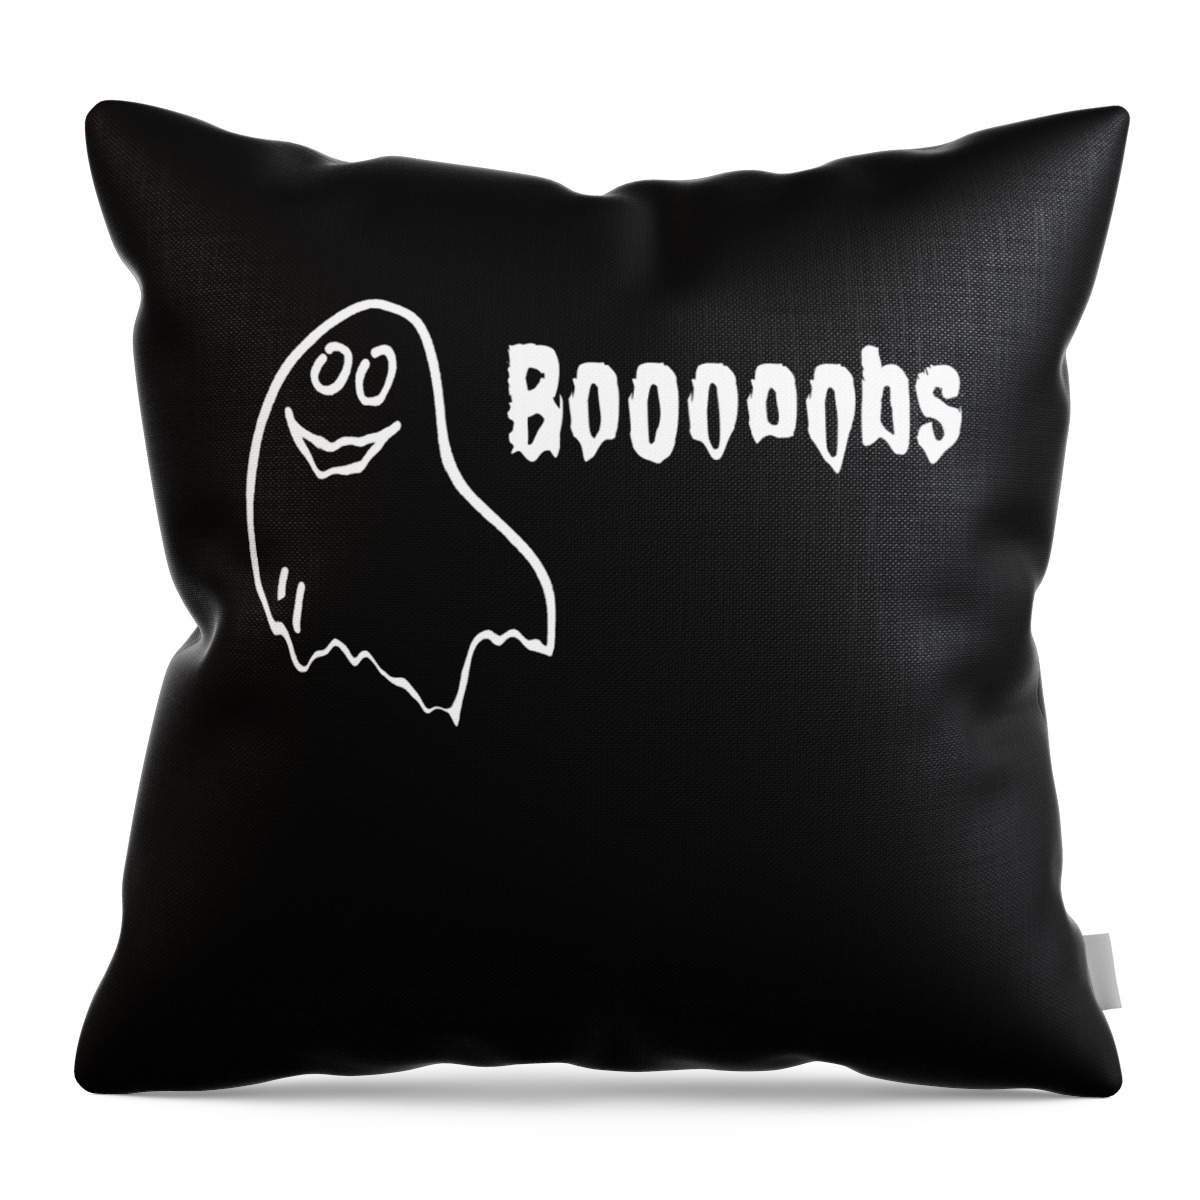 Cool Throw Pillow featuring the digital art Booooobs Boo Halloween Ghost by Flippin Sweet Gear